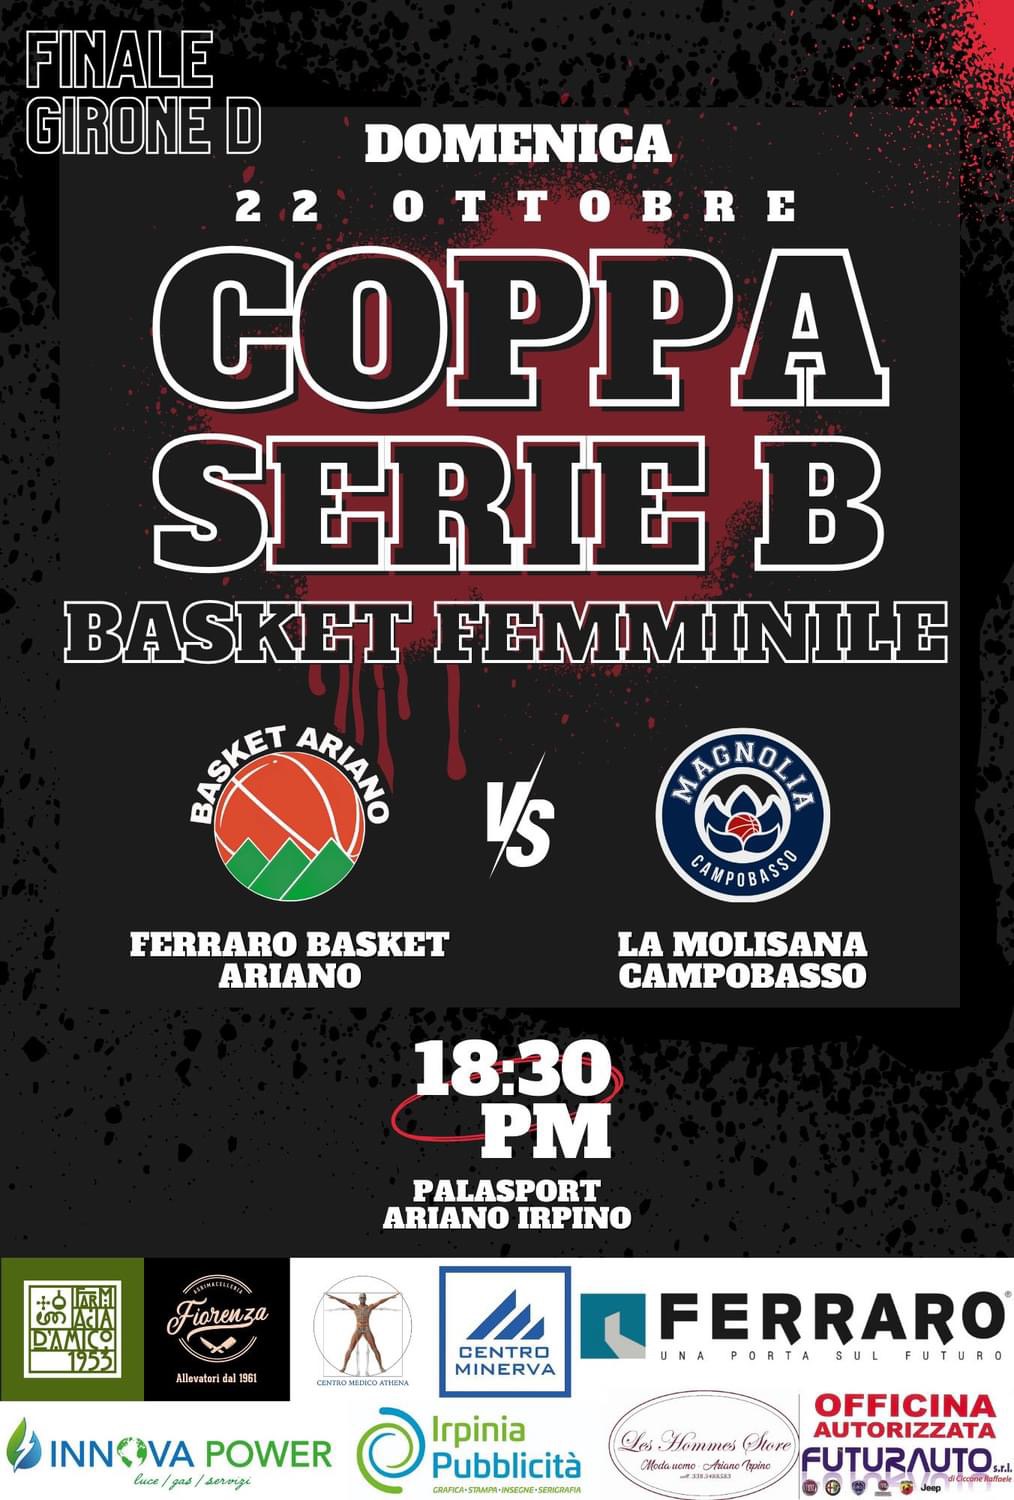 Ferraro Group Basket Ariano per la Coppa Basket Femminile - finale girone D